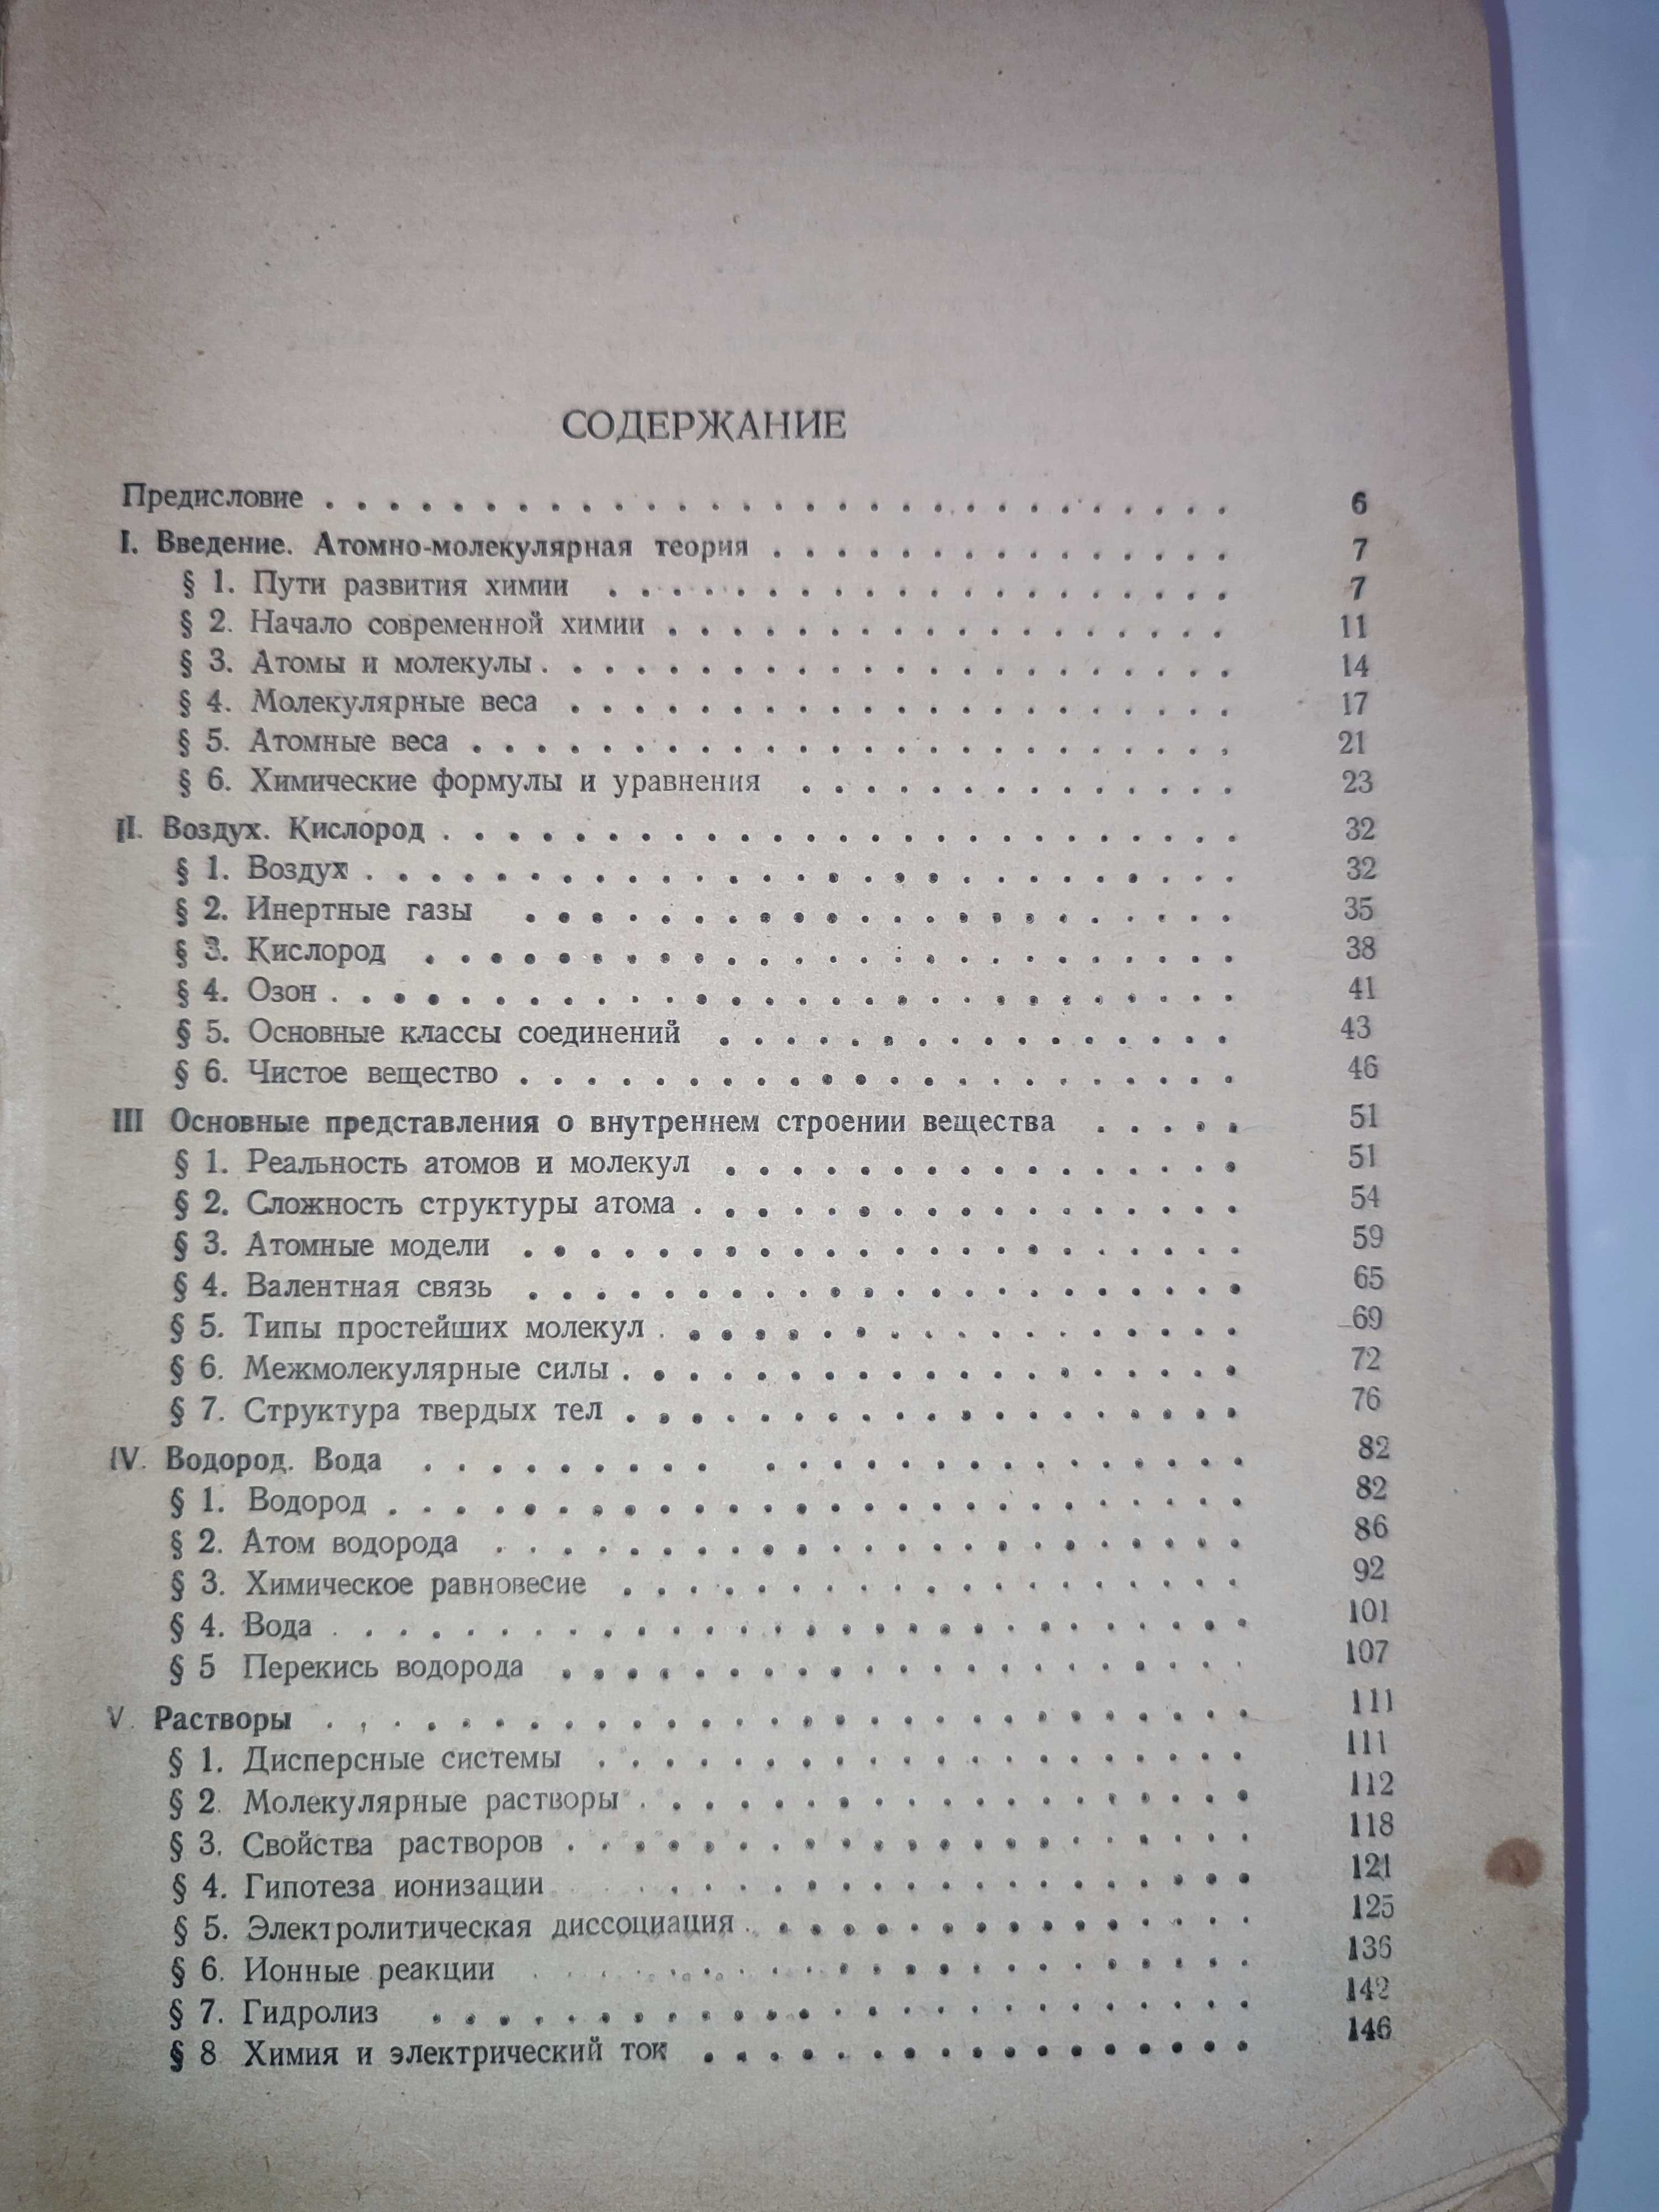 Учебник общей химии Некрасов